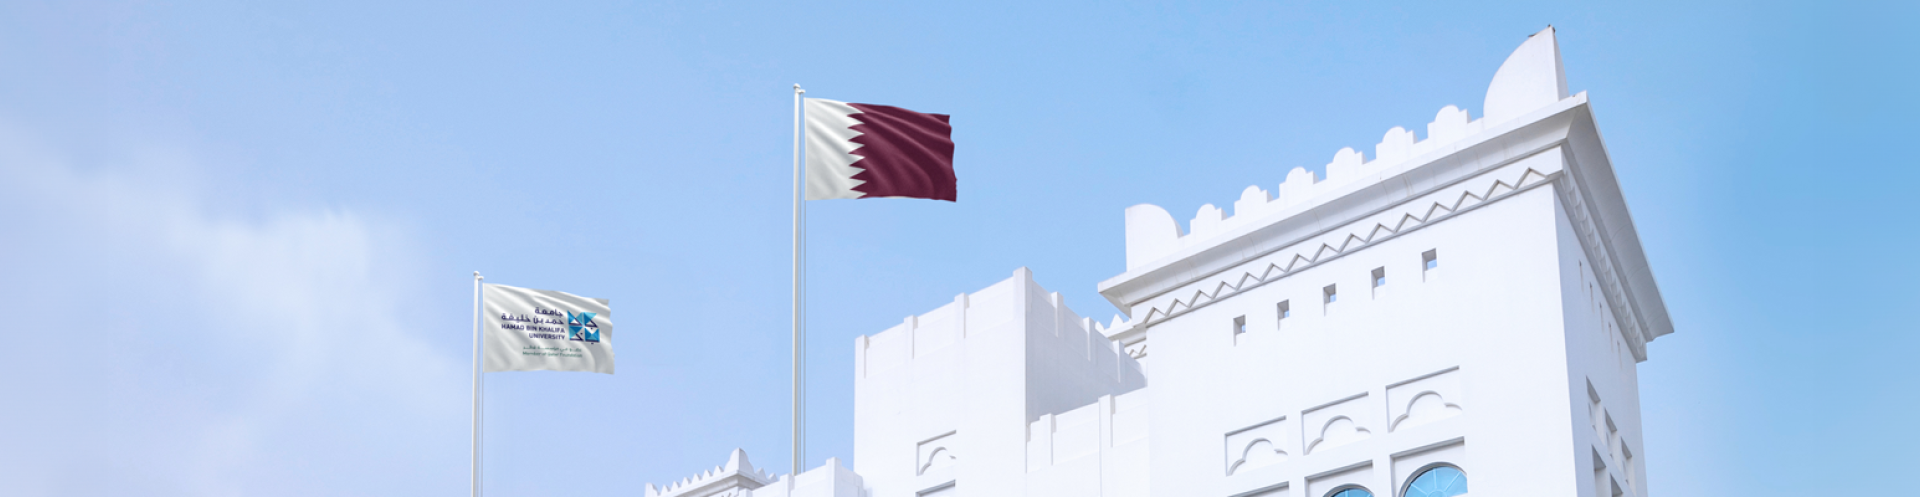 نائب رئيس جامعة حمد بن خليفة للبحوث ونائب رئيس البحوث والتطوير والابتكار في مؤسسة قطر